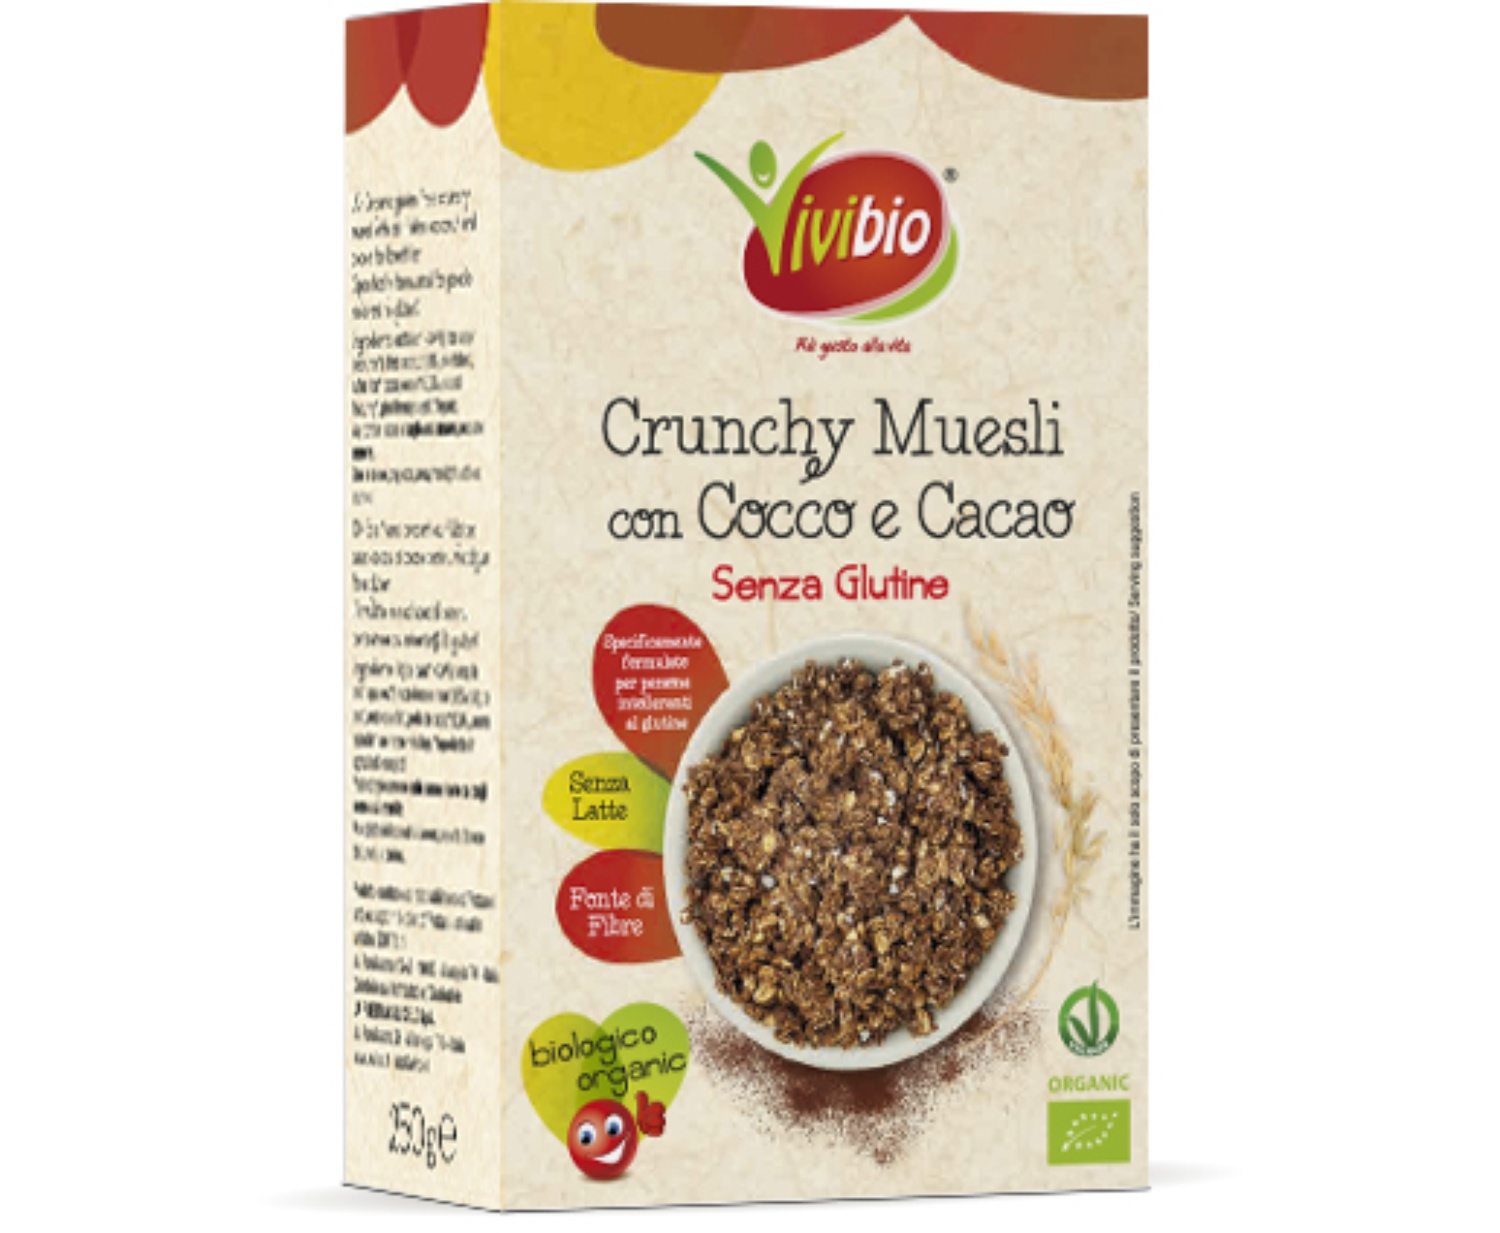 Image of Crunchy Muesli Avena Cocco E Cacao Vivibio 250g